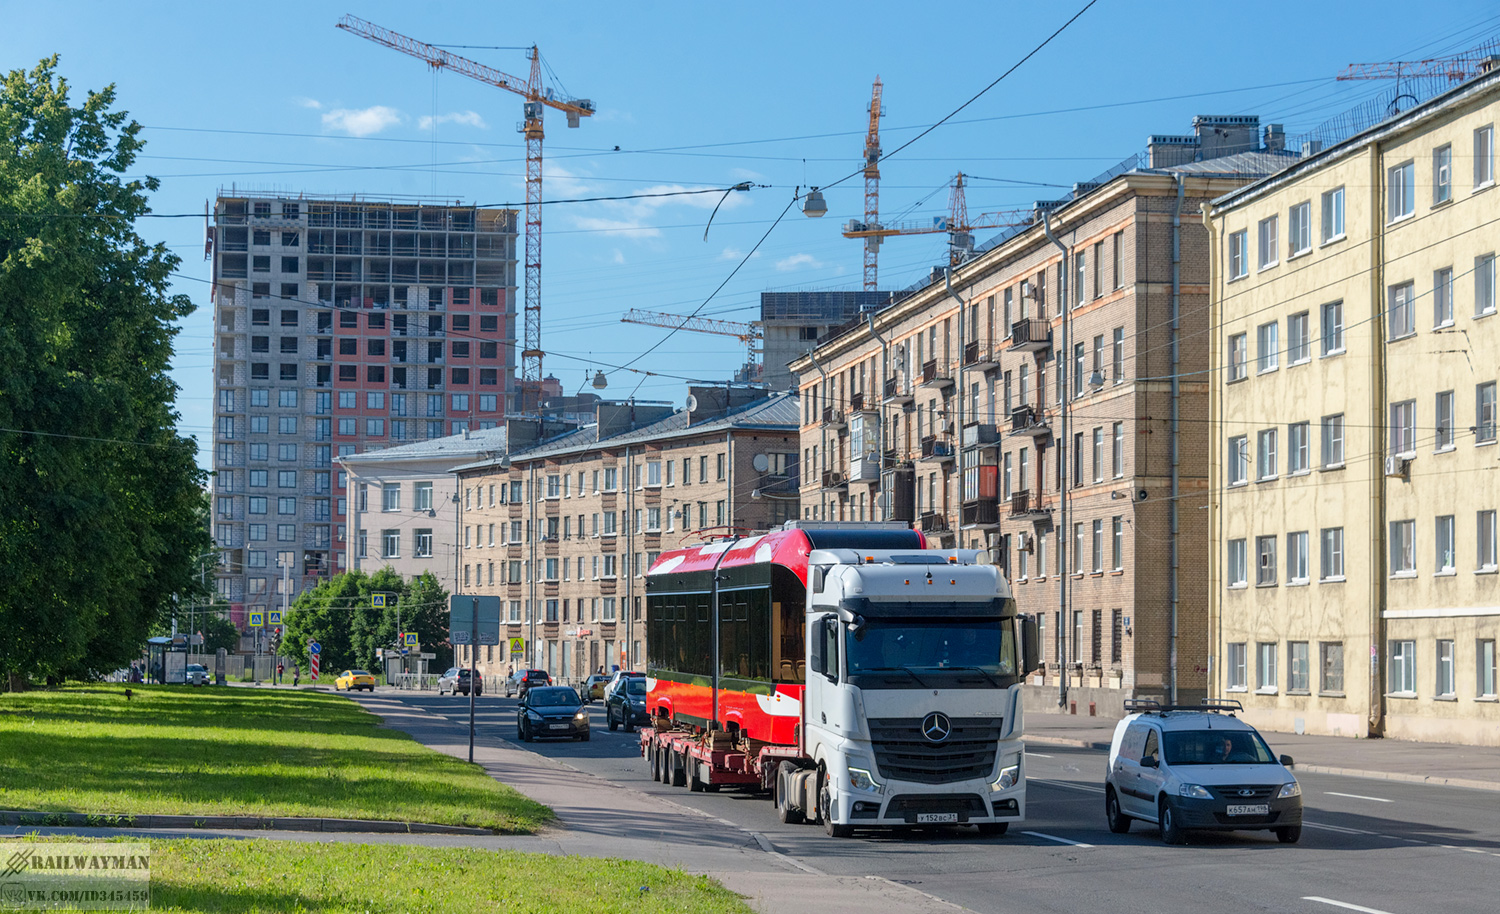 Санкт-Петербург — Новые трамвайные вагоны; Санкт-Петербург — Троллейбусные линии и инфраструктура